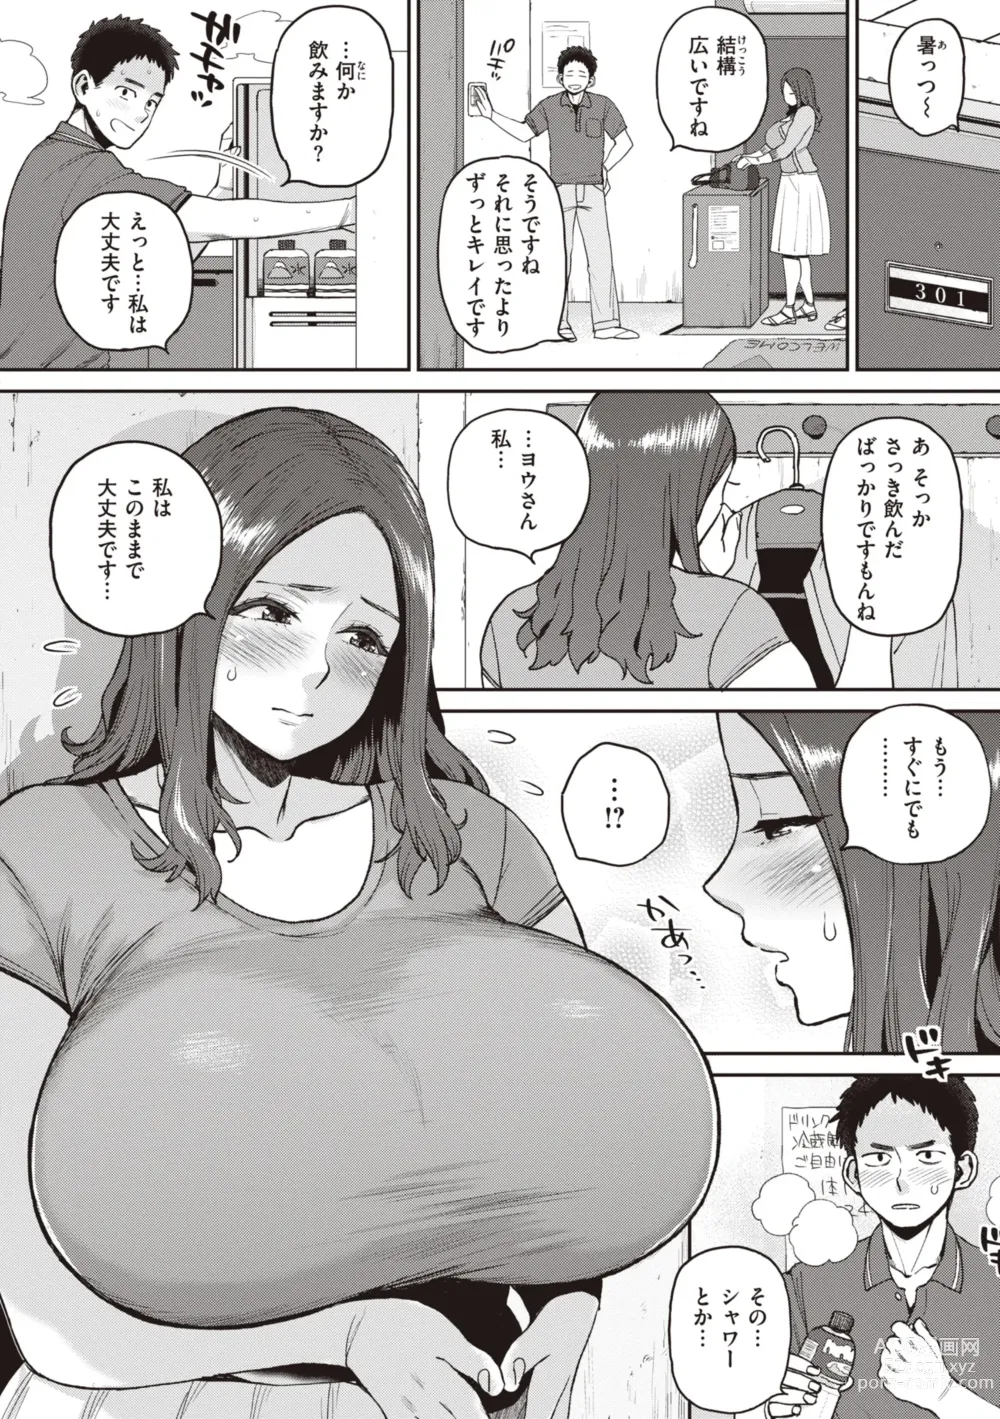 Page 8 of manga Hitodzuma no uso wa sugu bareru